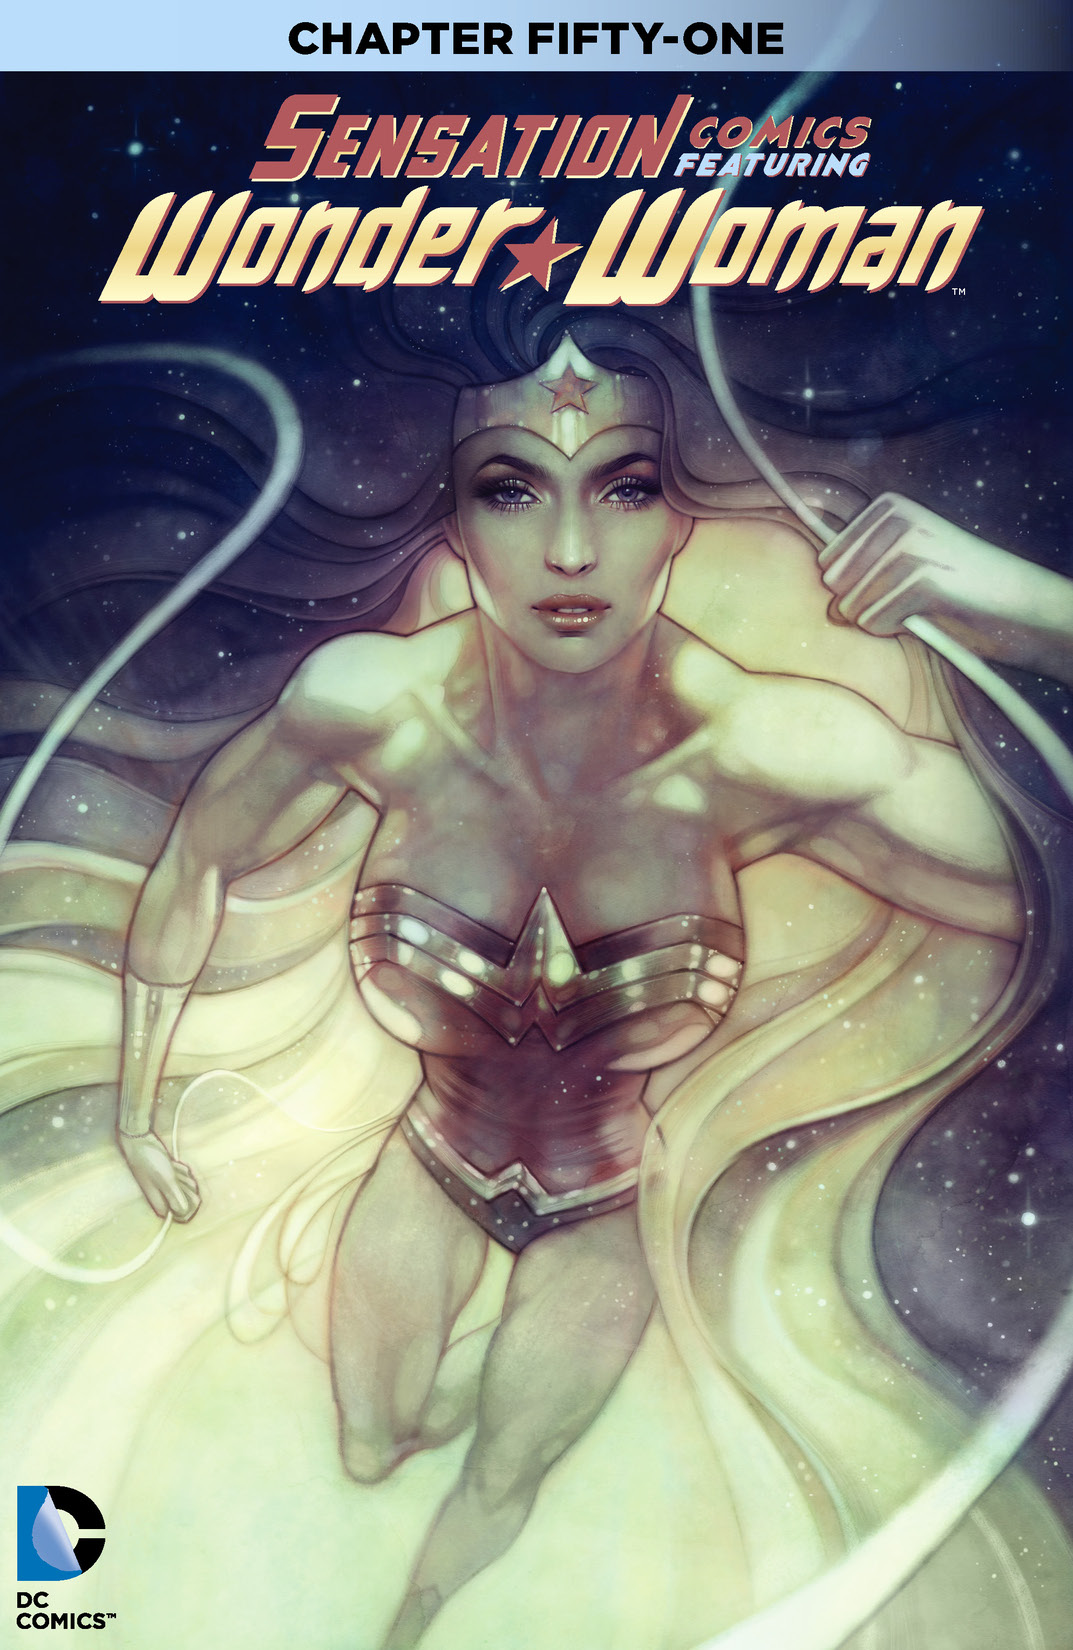 Sensation Comics Featuring Wonder Woman #51 preview images